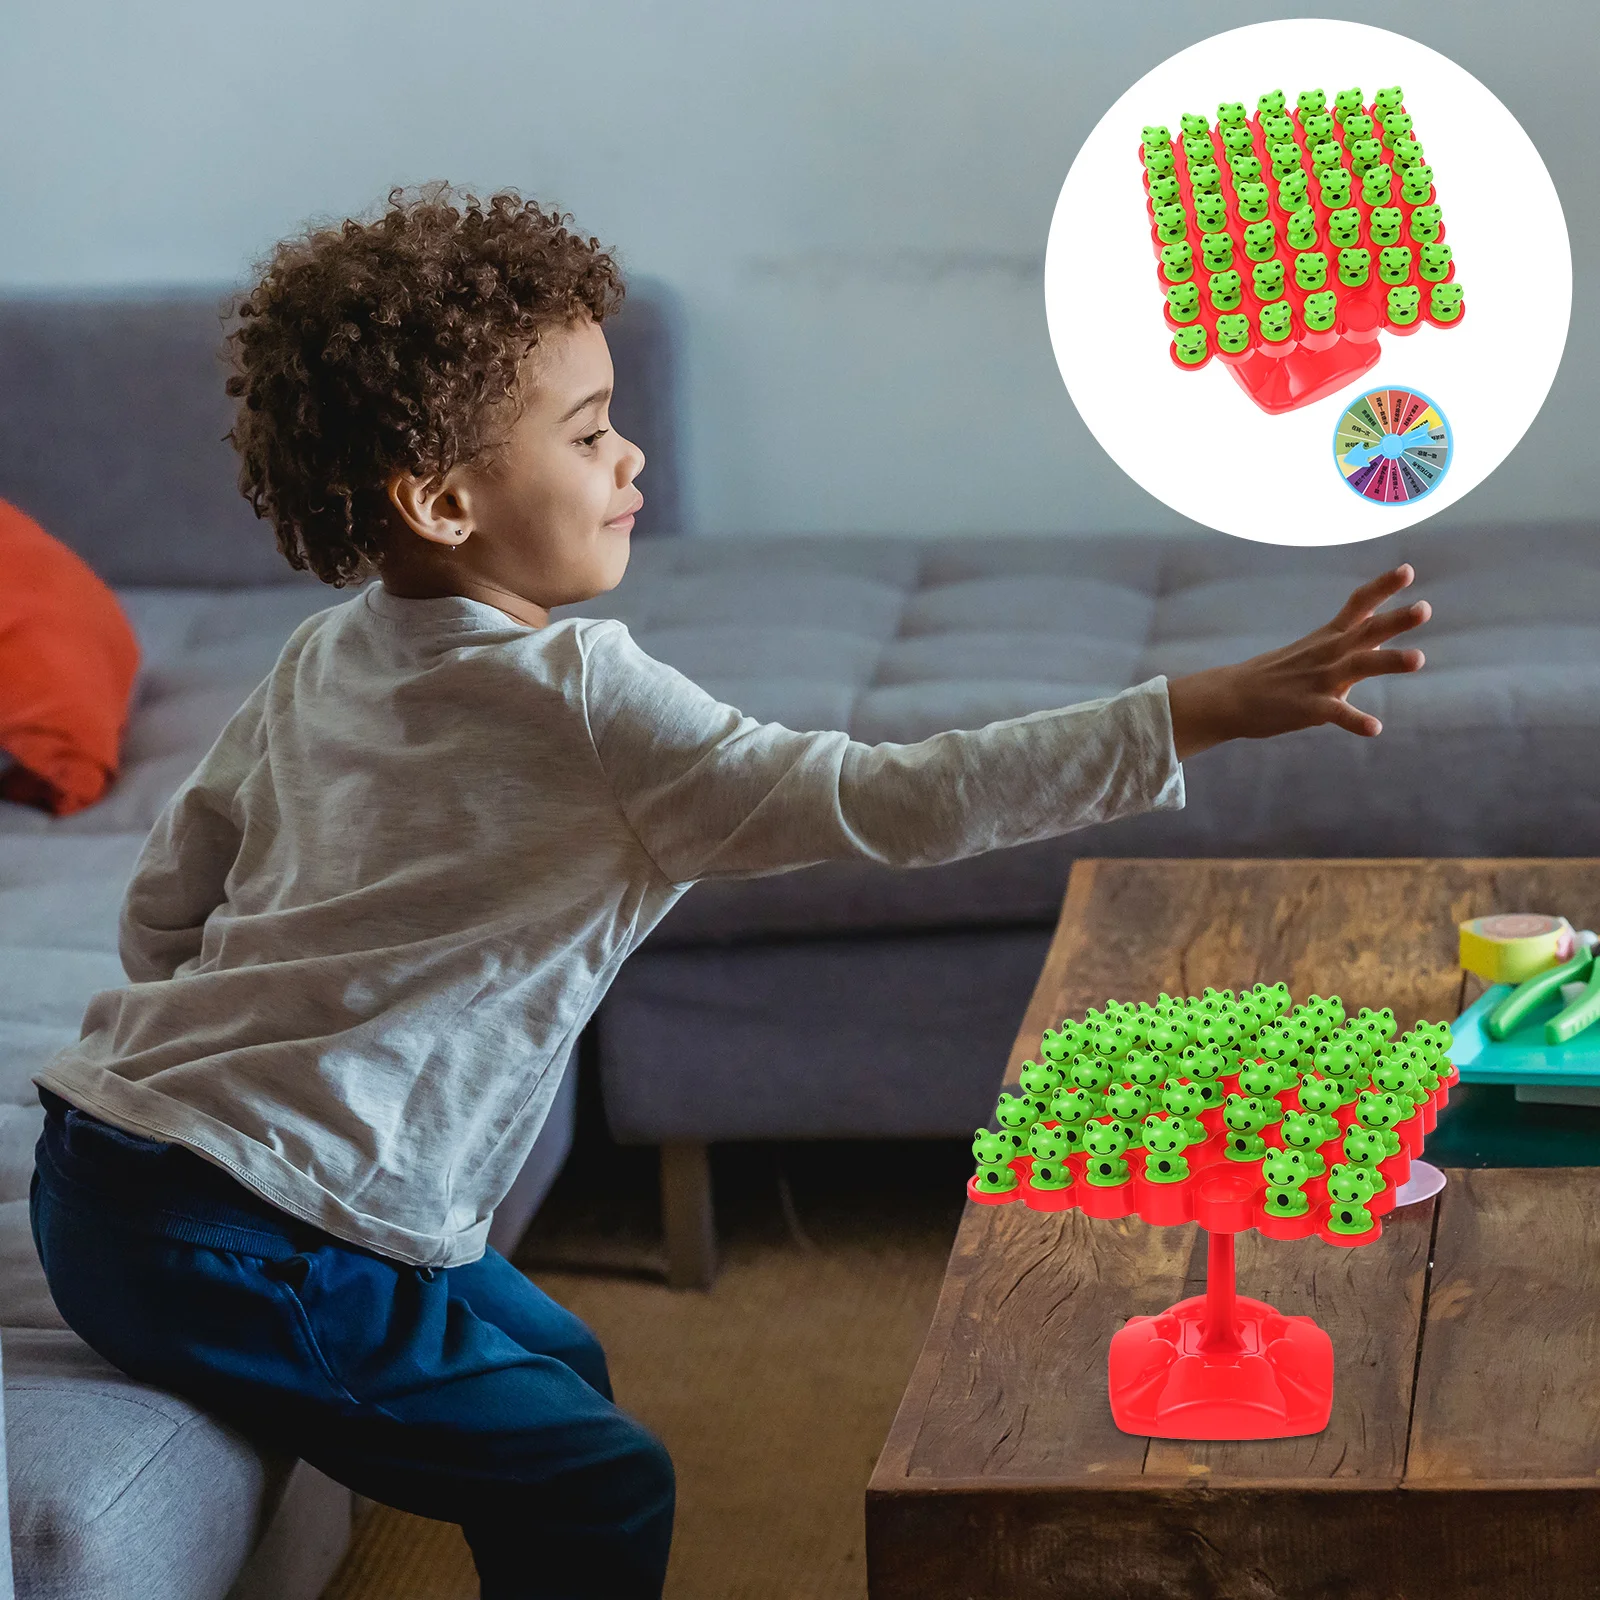 

Детская настольная игра с лягушкой, развивающая игрушка для дошкольного обучения, игрушки для детей и родителей